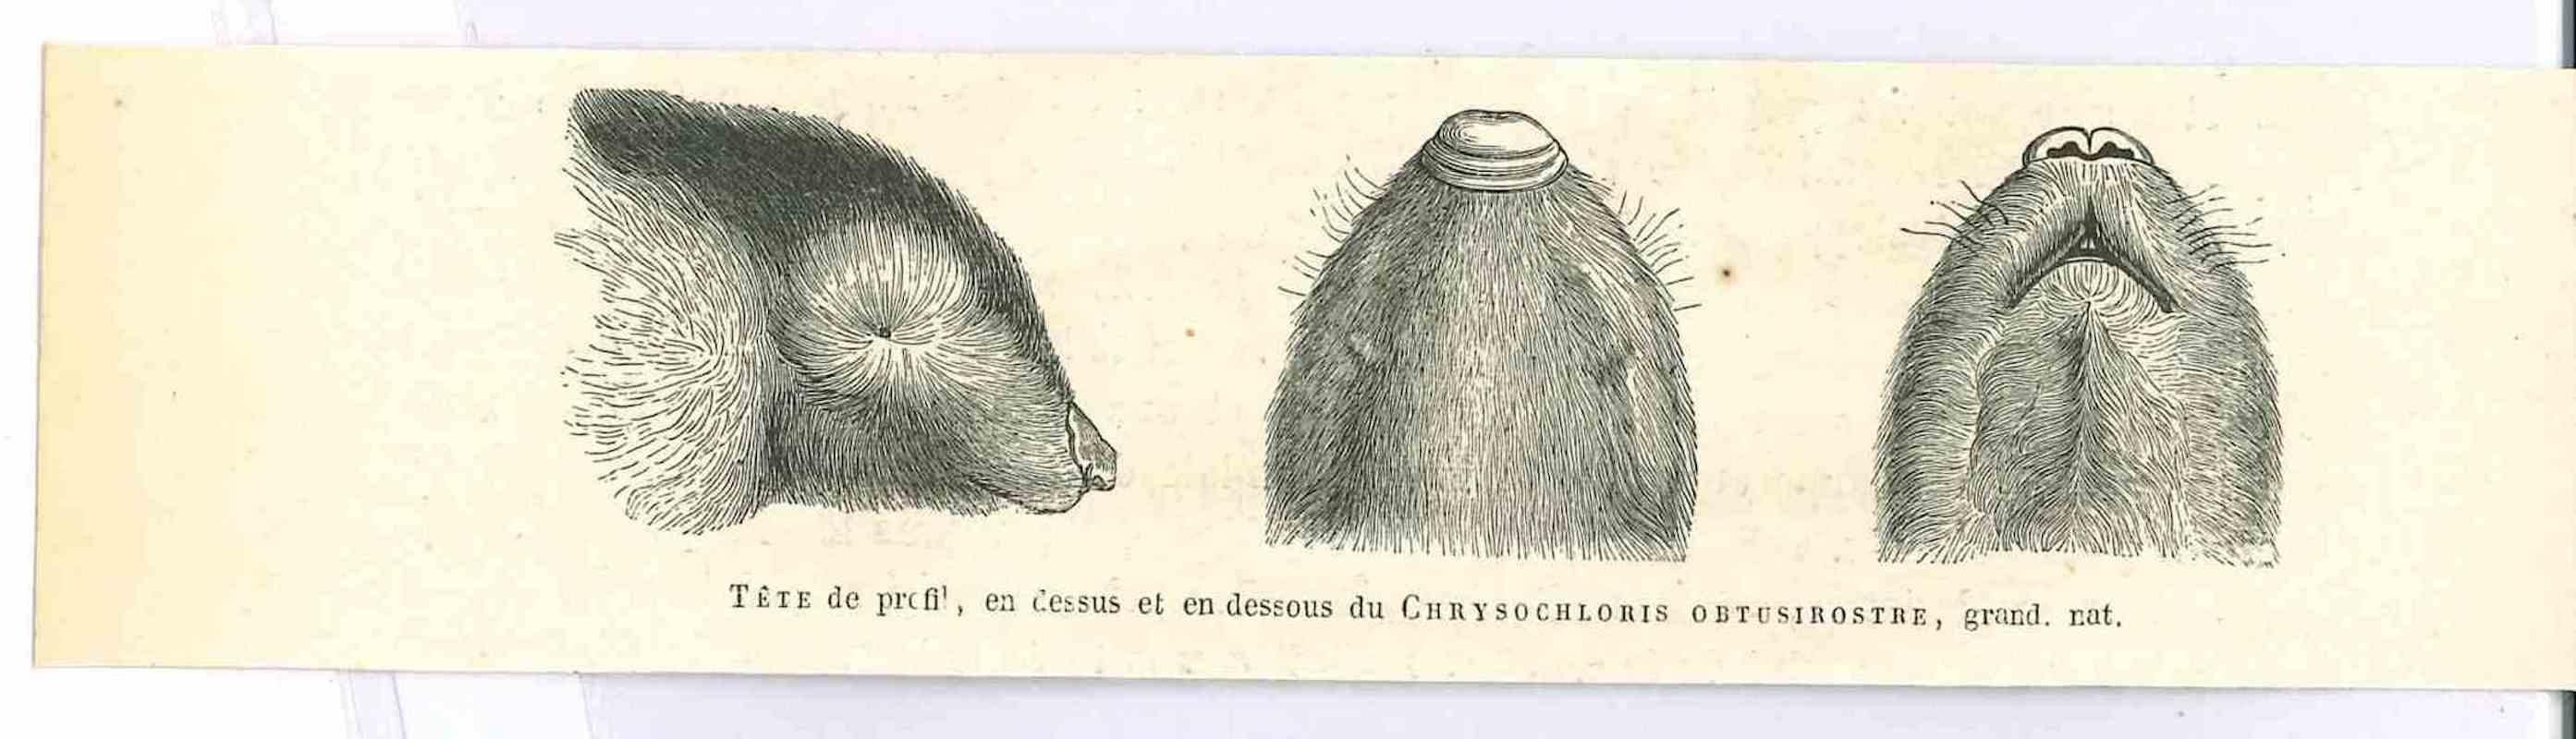 Paul Gervais  Figurative Print – The Rat – Lithographie von Paul Gervais, 1854